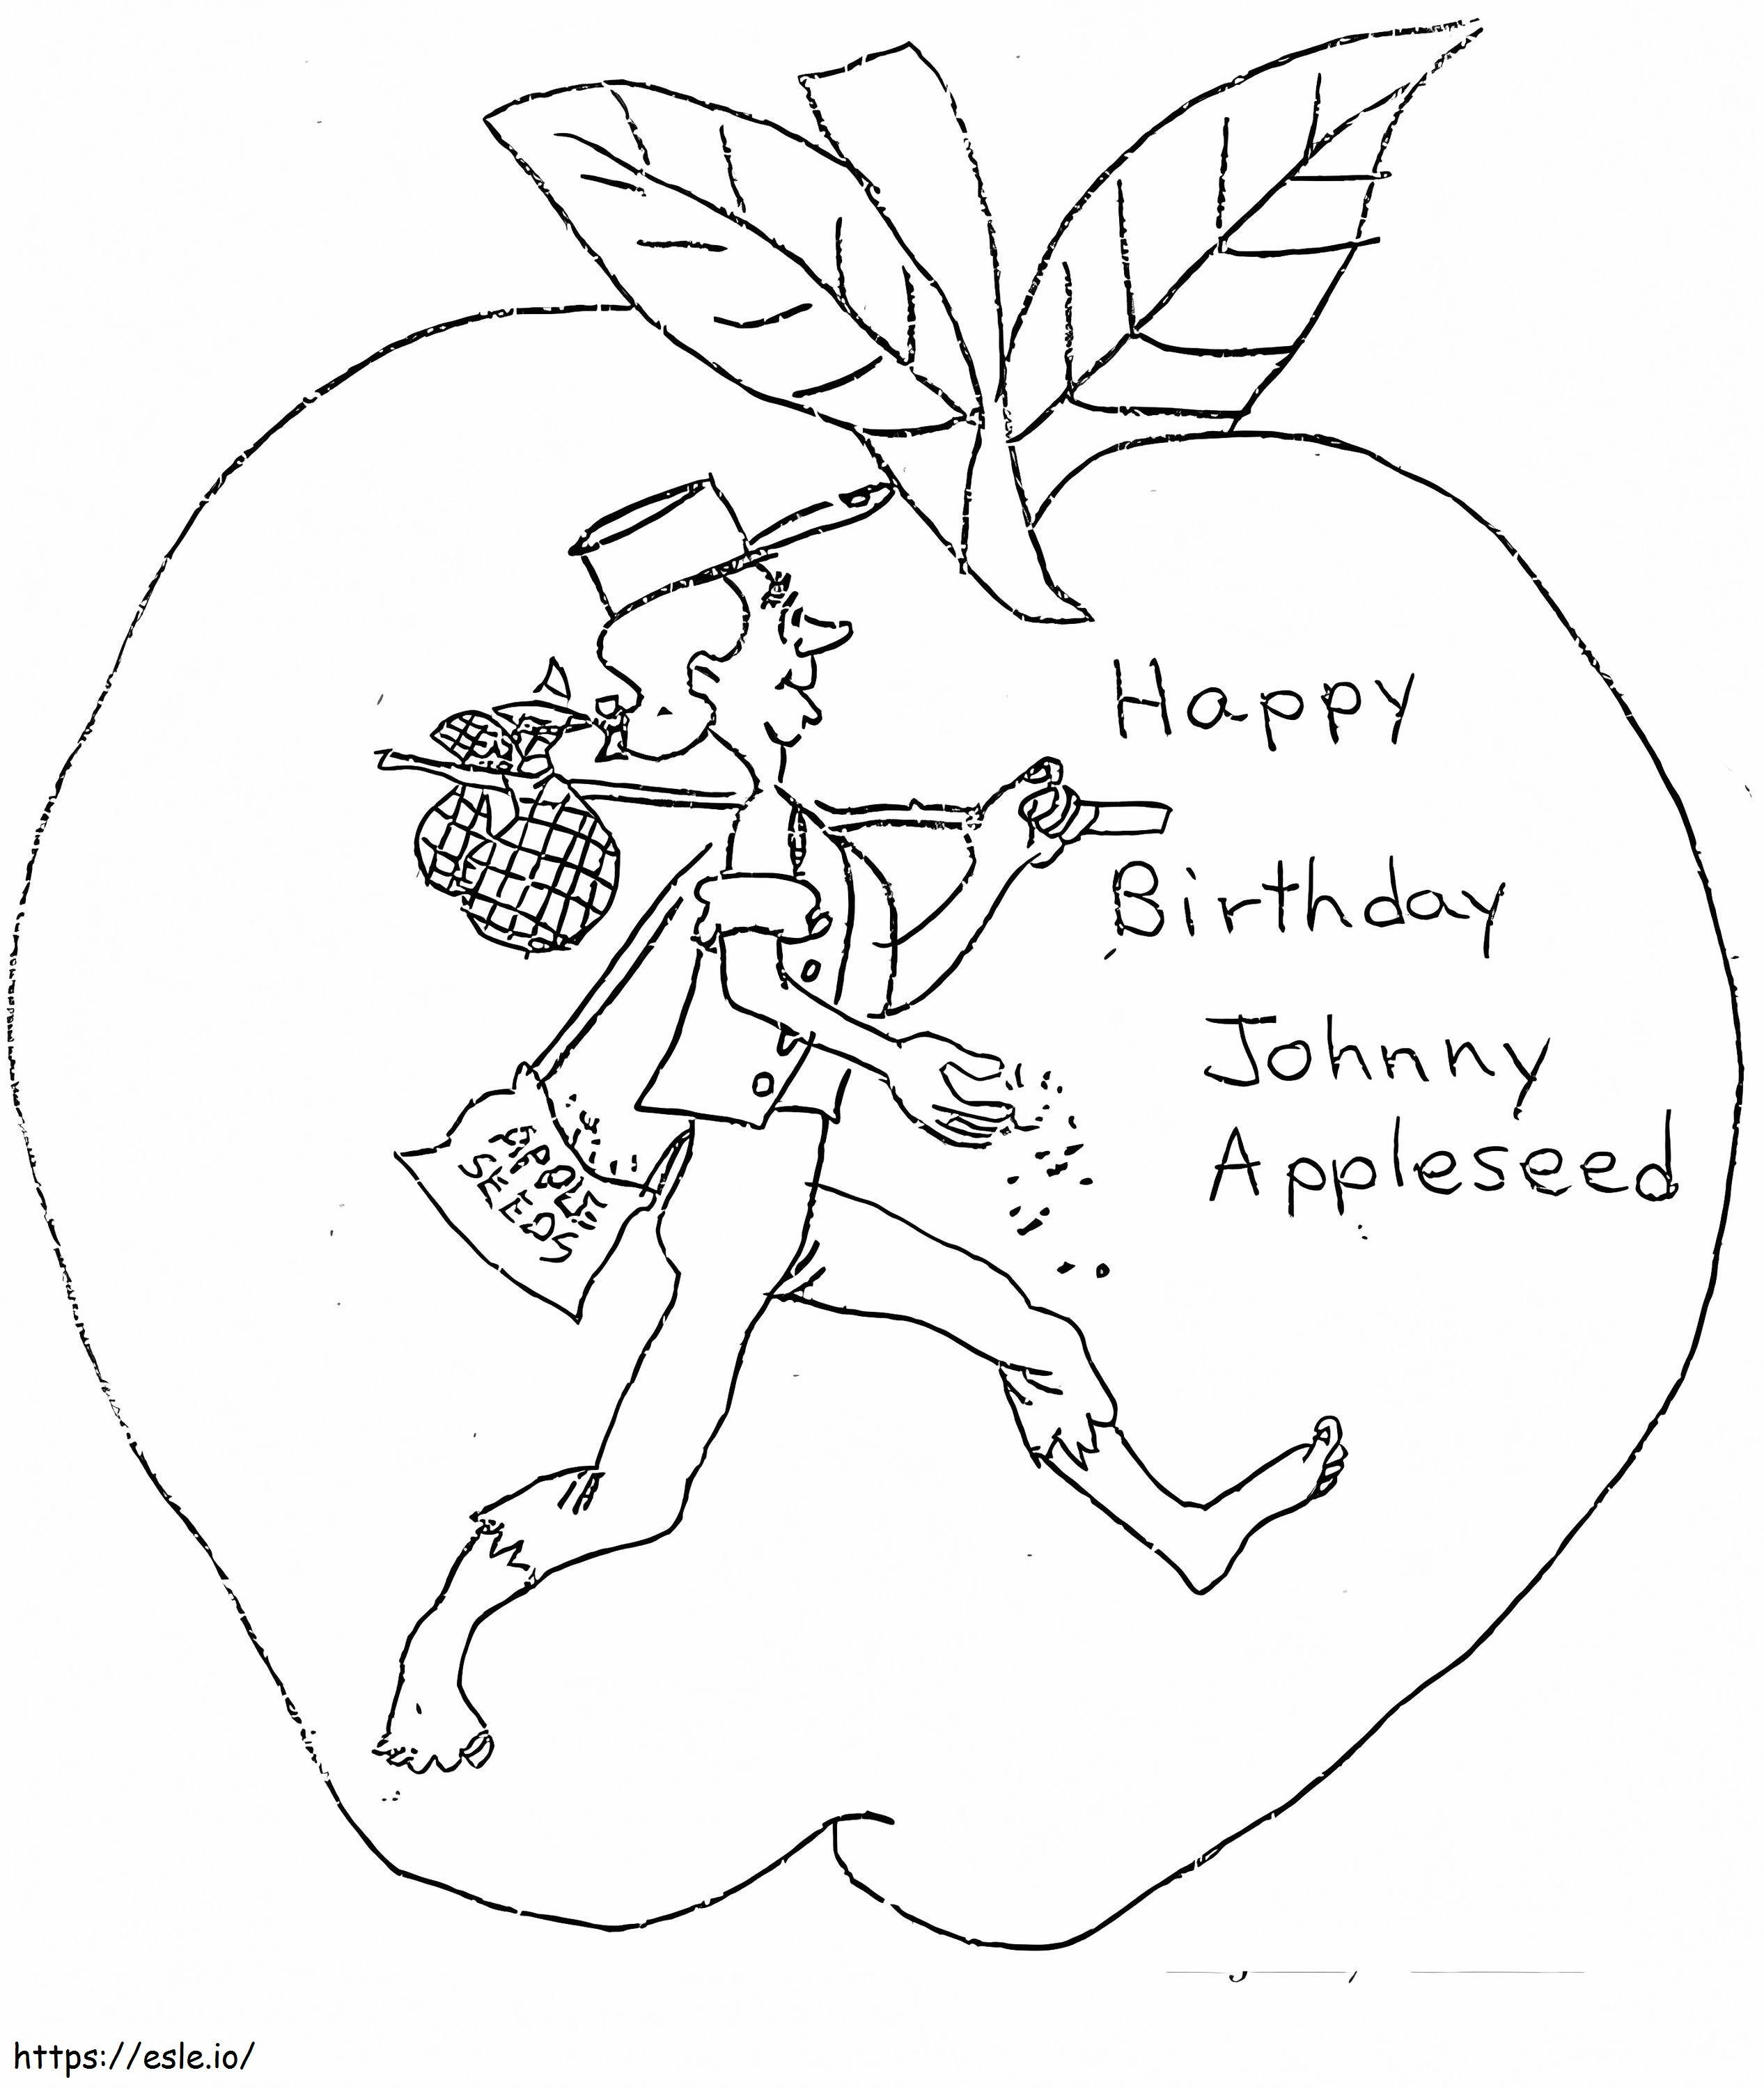 Alles Gute zum Geburtstag, Johnny Appleseed ausmalbilder